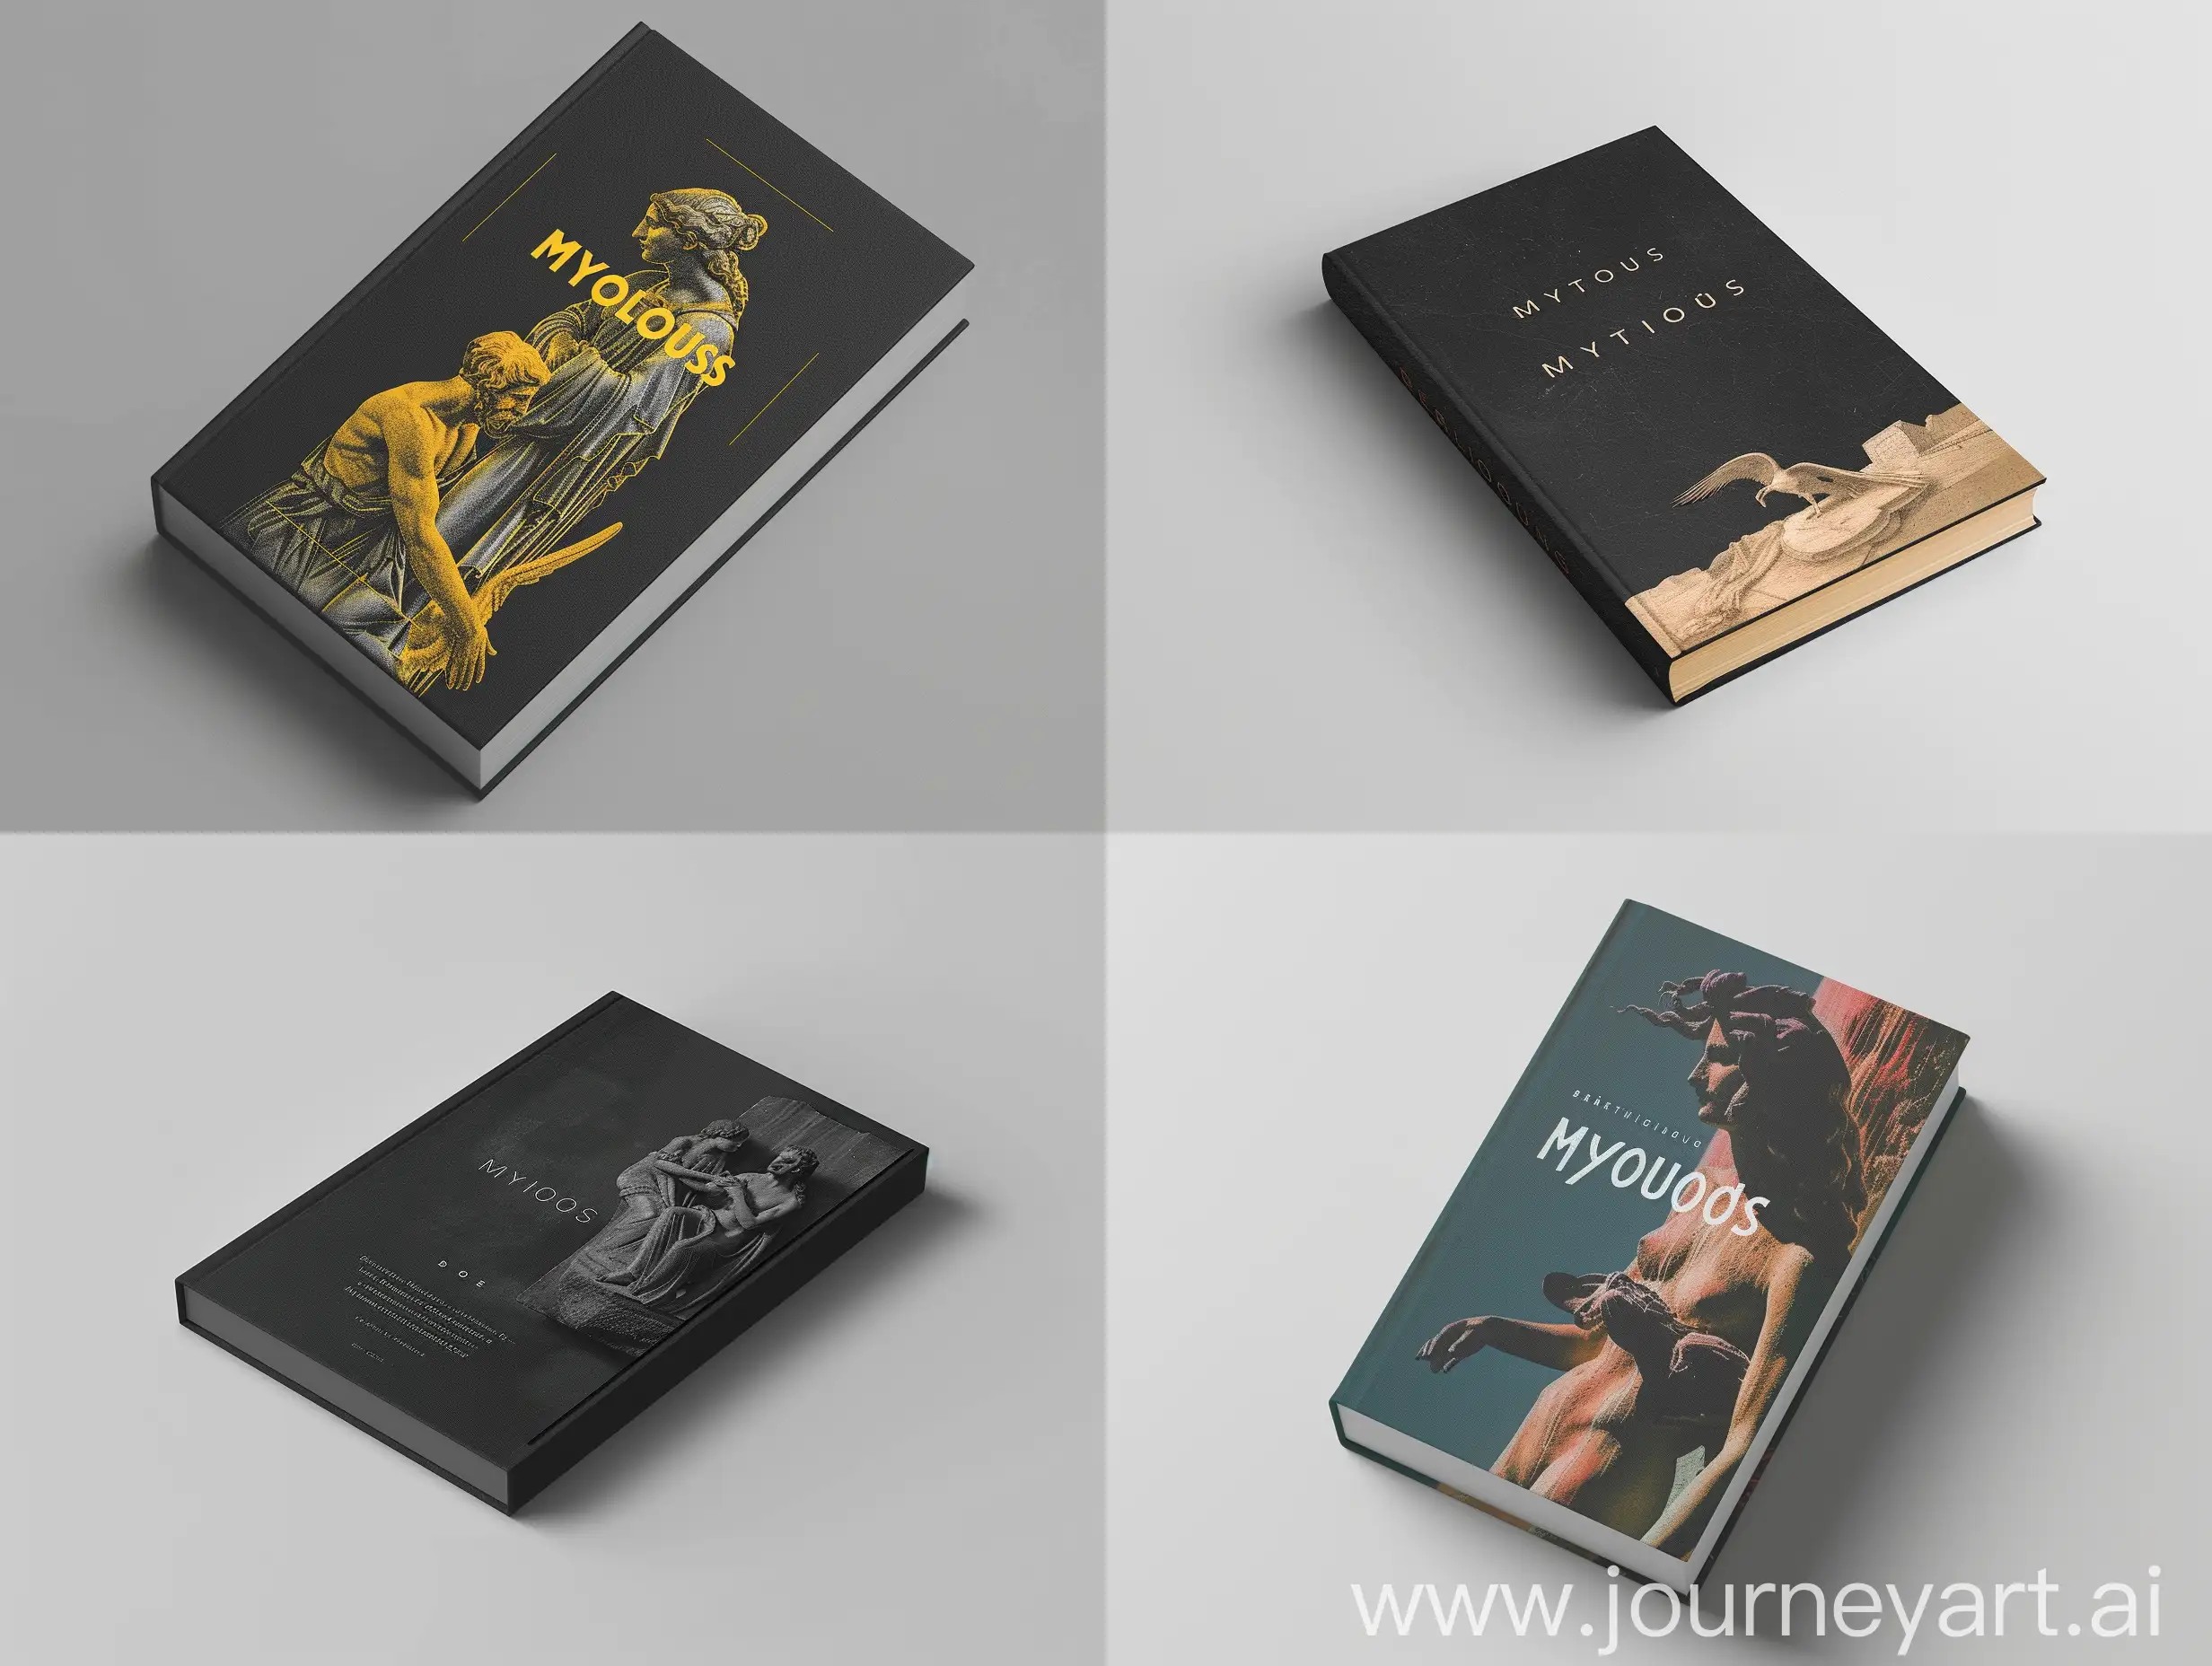 дизайн обложки для книги Роланда Барта "мифологии", стиль минимализм, использование метафоры, визуализация на книге с матовой обложкой